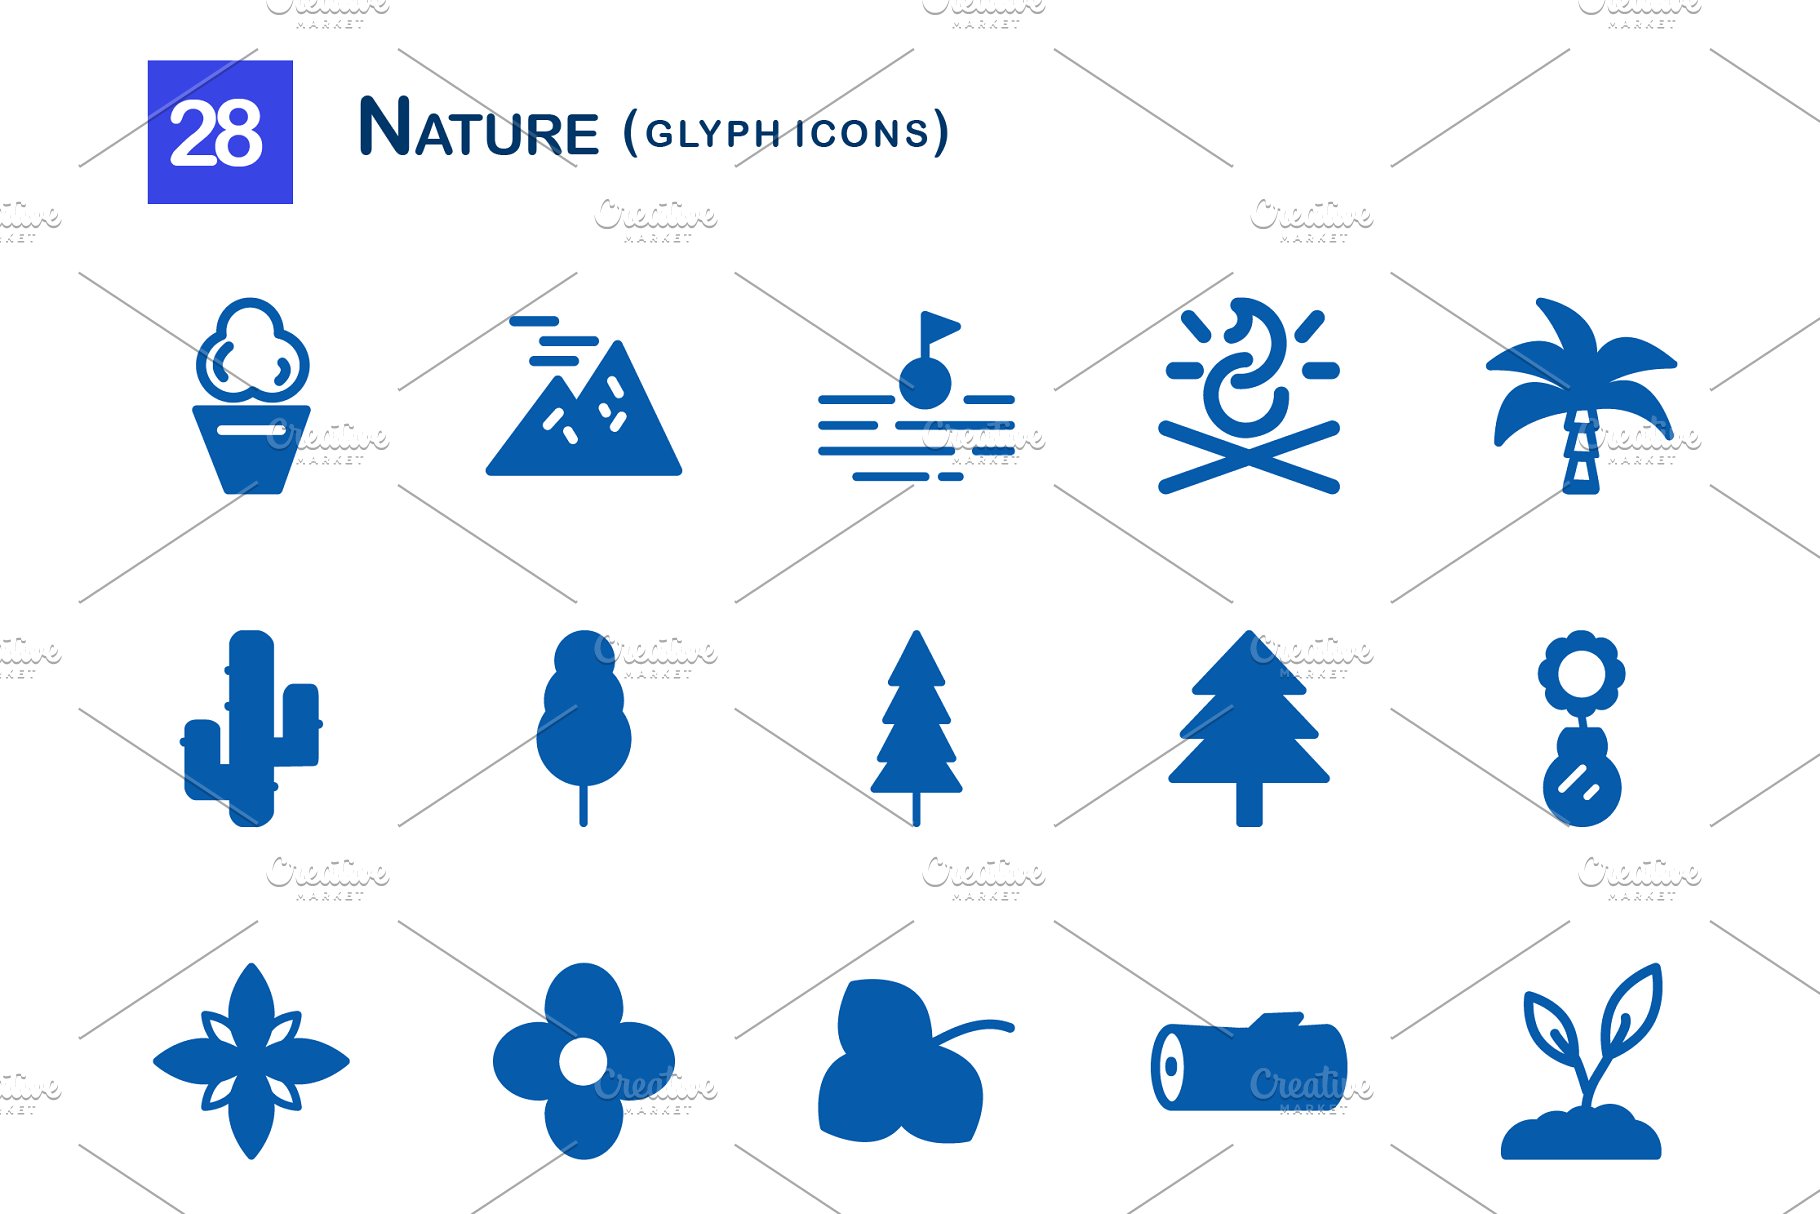 28个大自然元素字体非凡图库精选图标 28 Nature Glyph Icons插图(1)